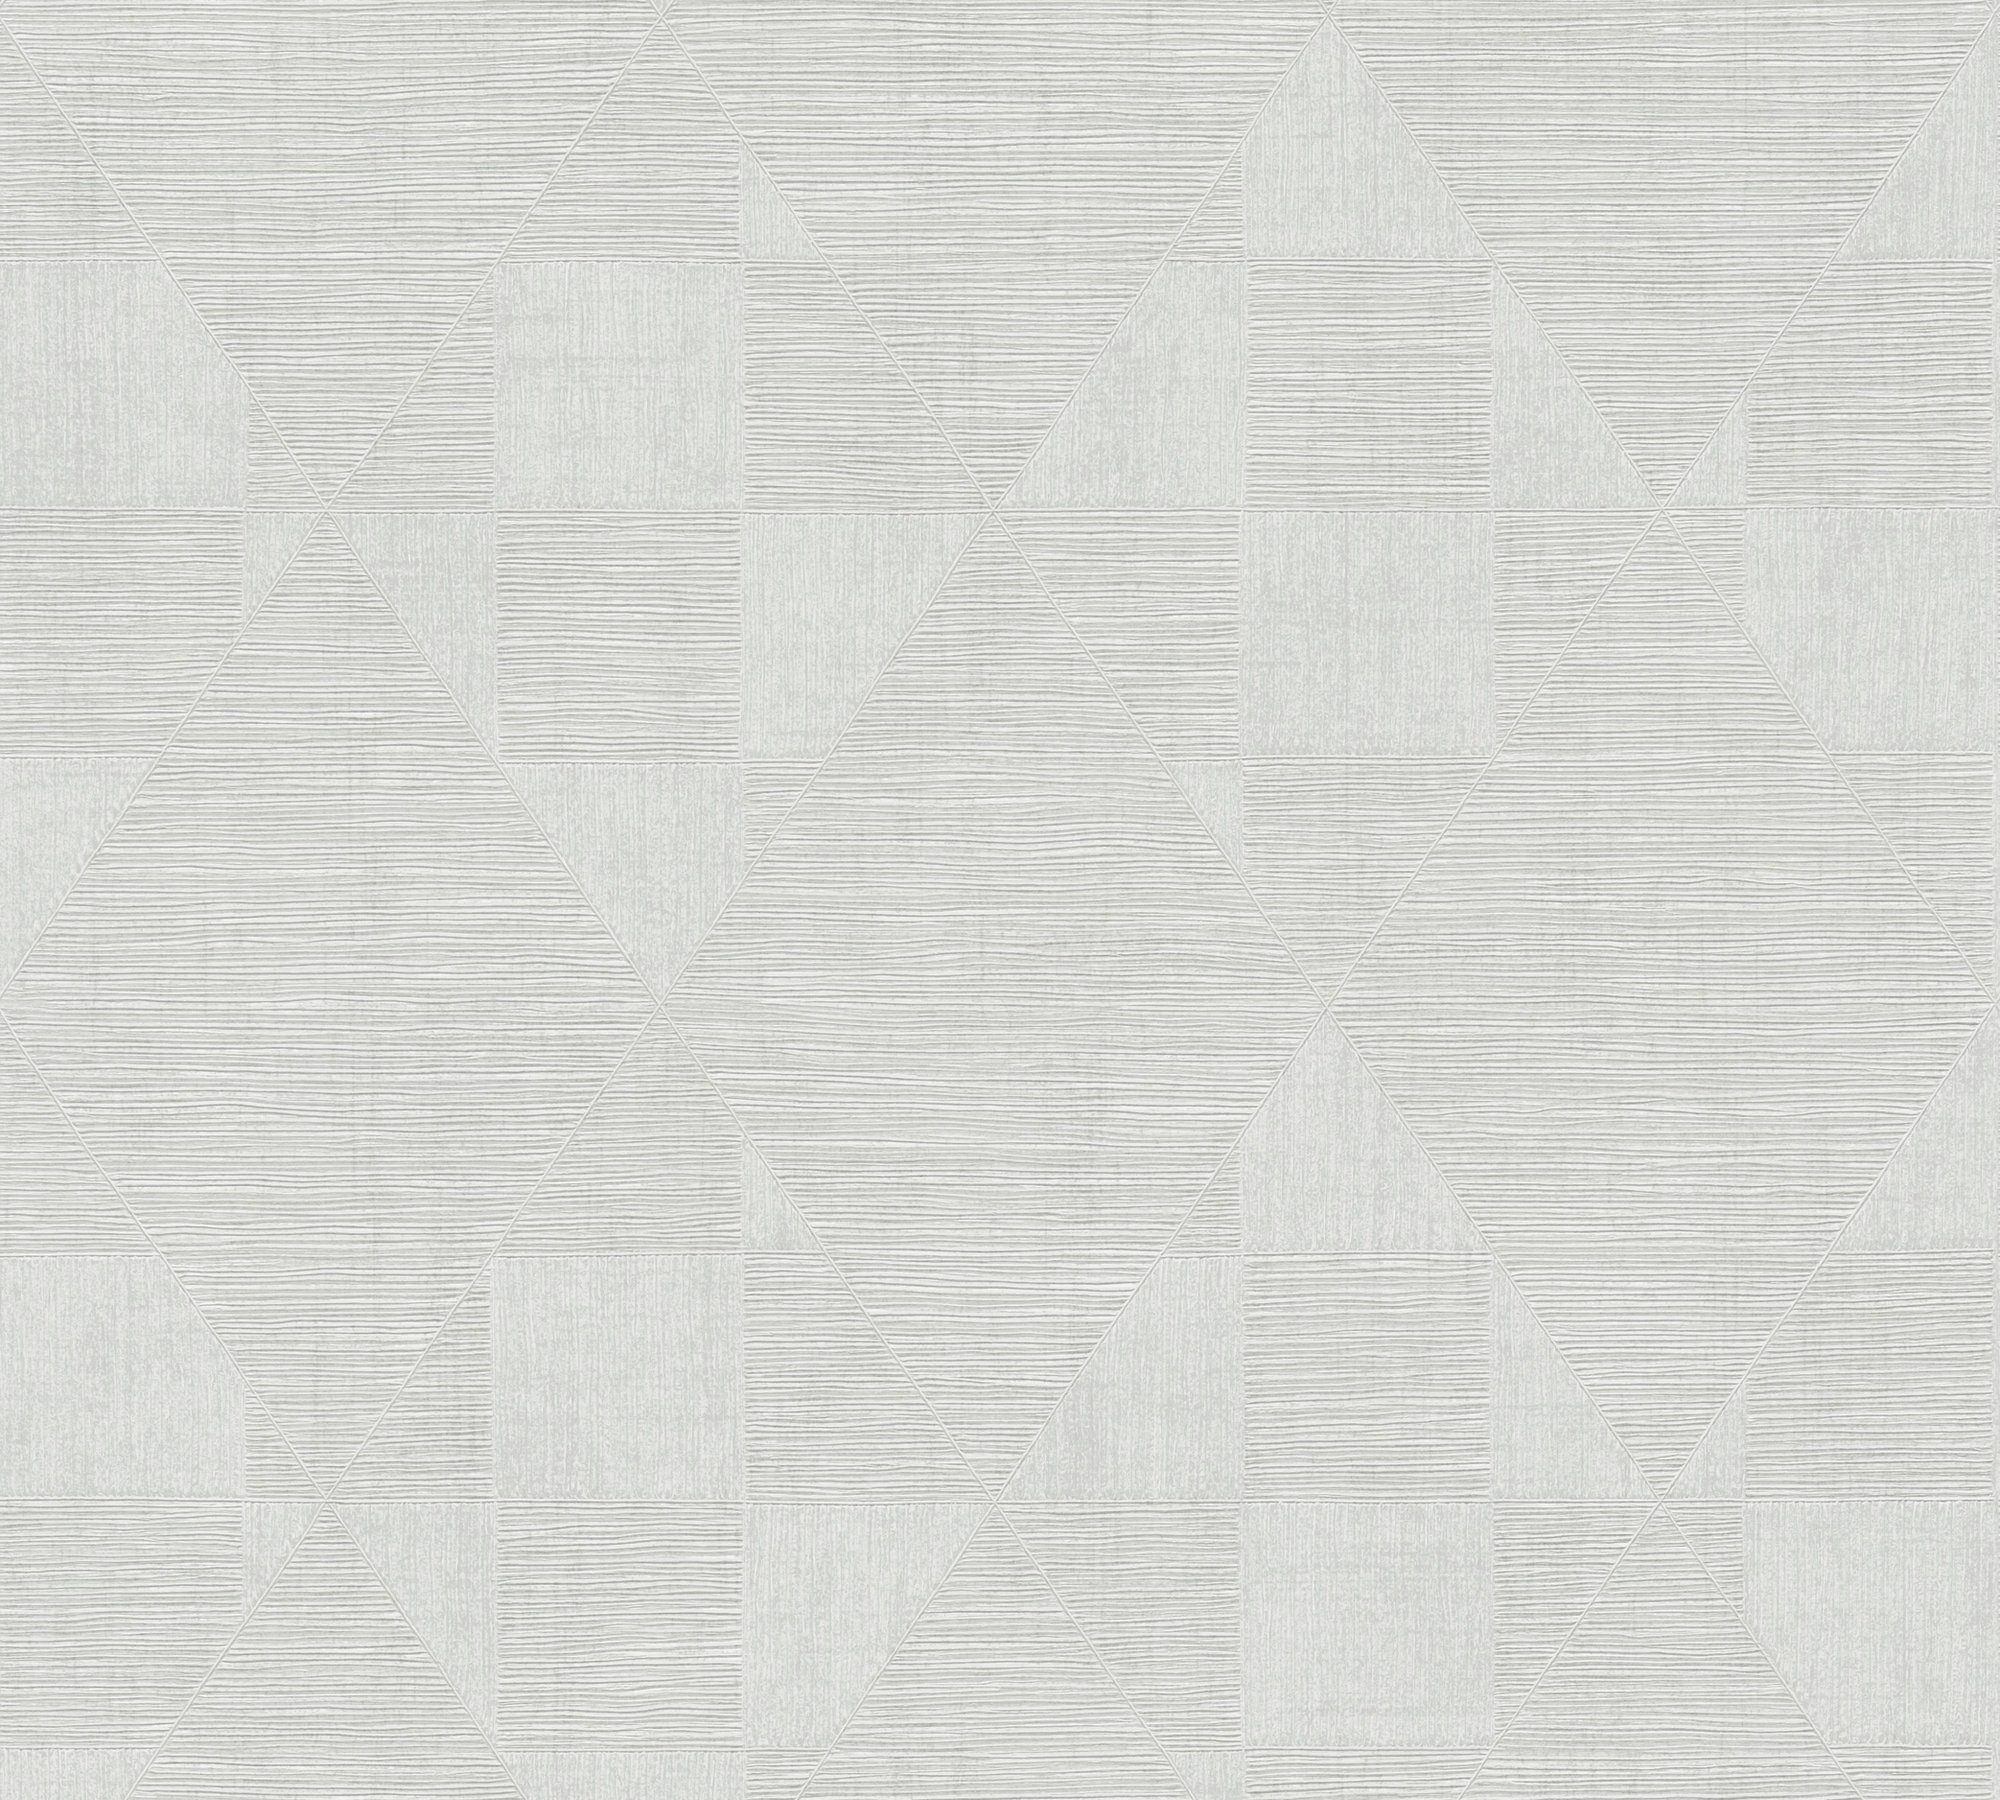 living Geometrisch walls grau-weiß Tapete strukturiert, Titanium, Vliestapete geometrisch,